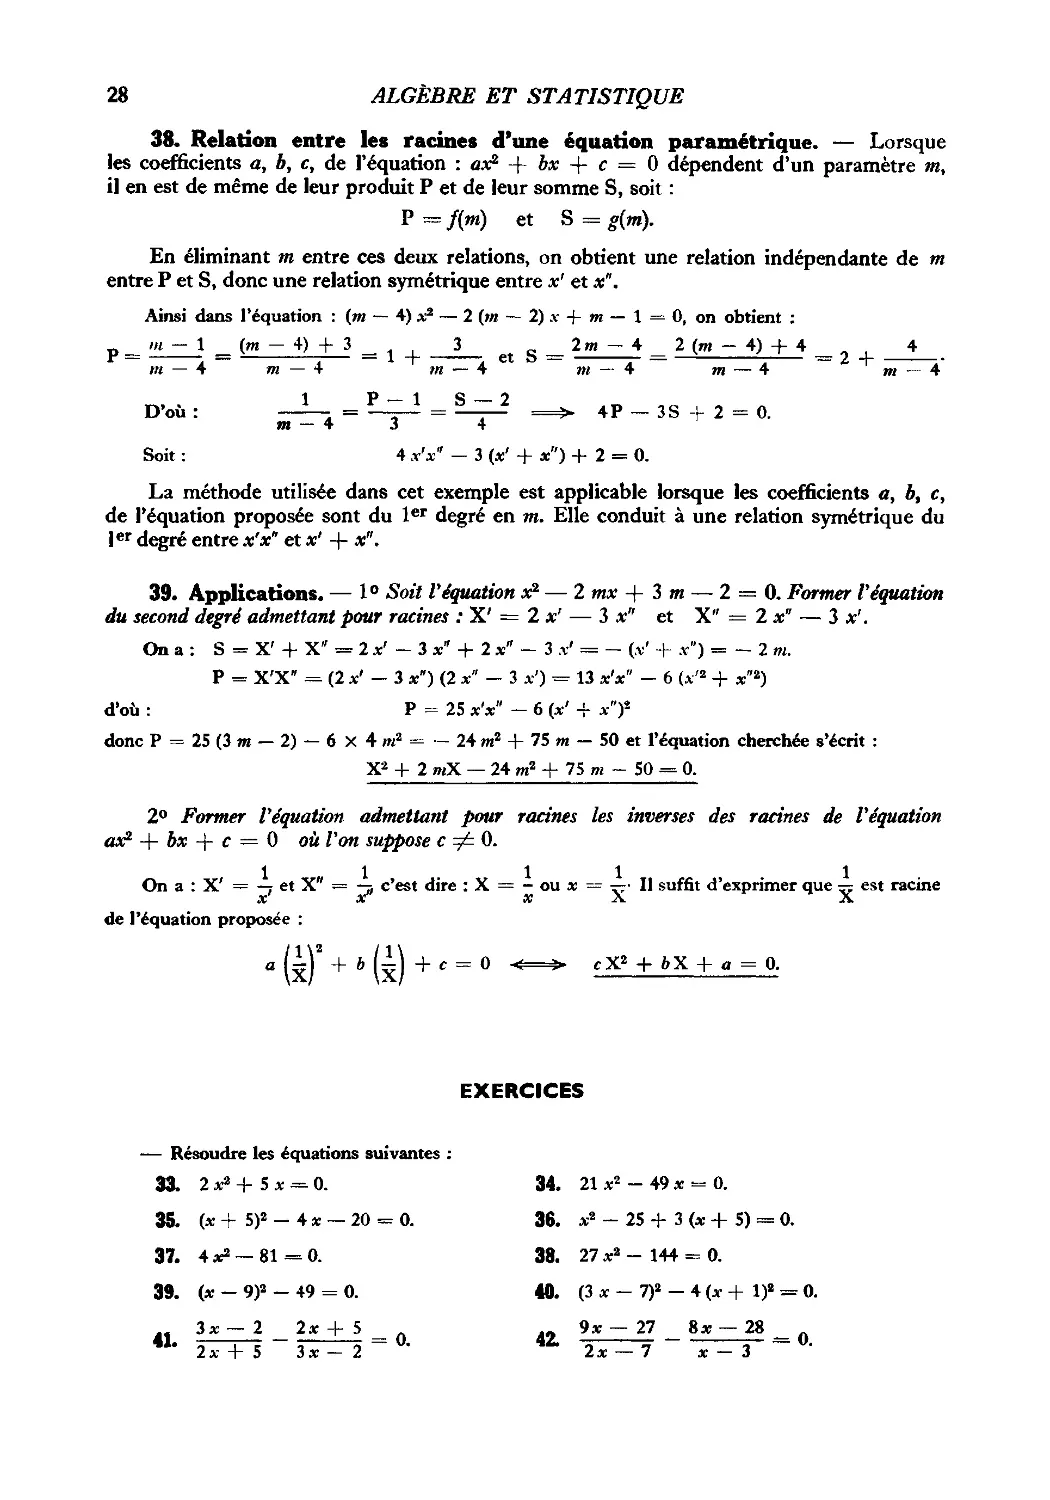 38. Relation entre les racines d’une équation paramétrique
39. Applications
Exercices